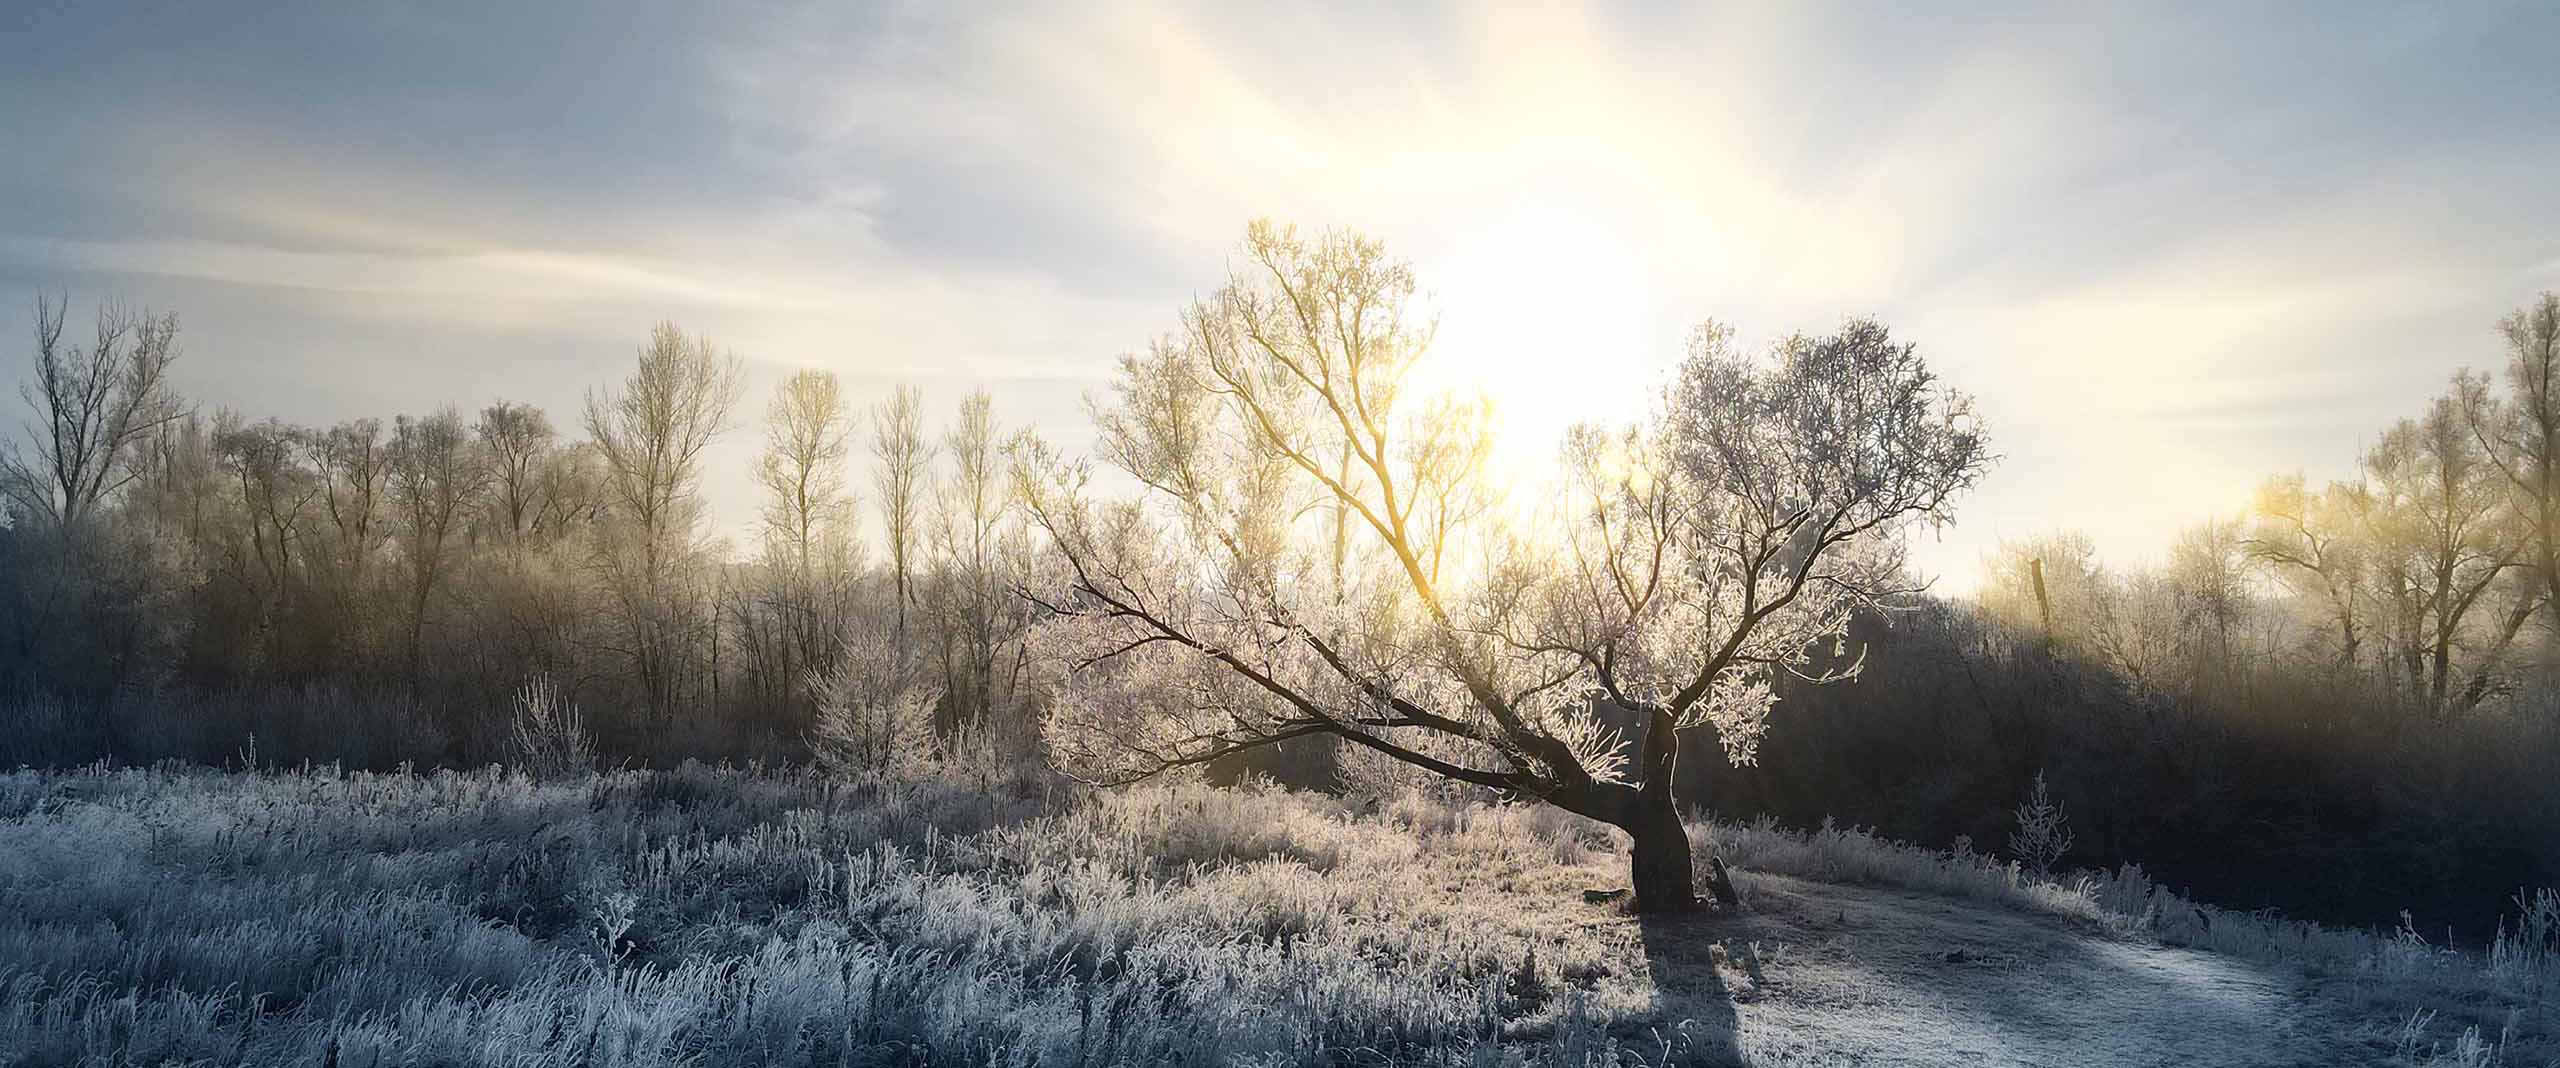 soleil d'hiver derrière un arbre